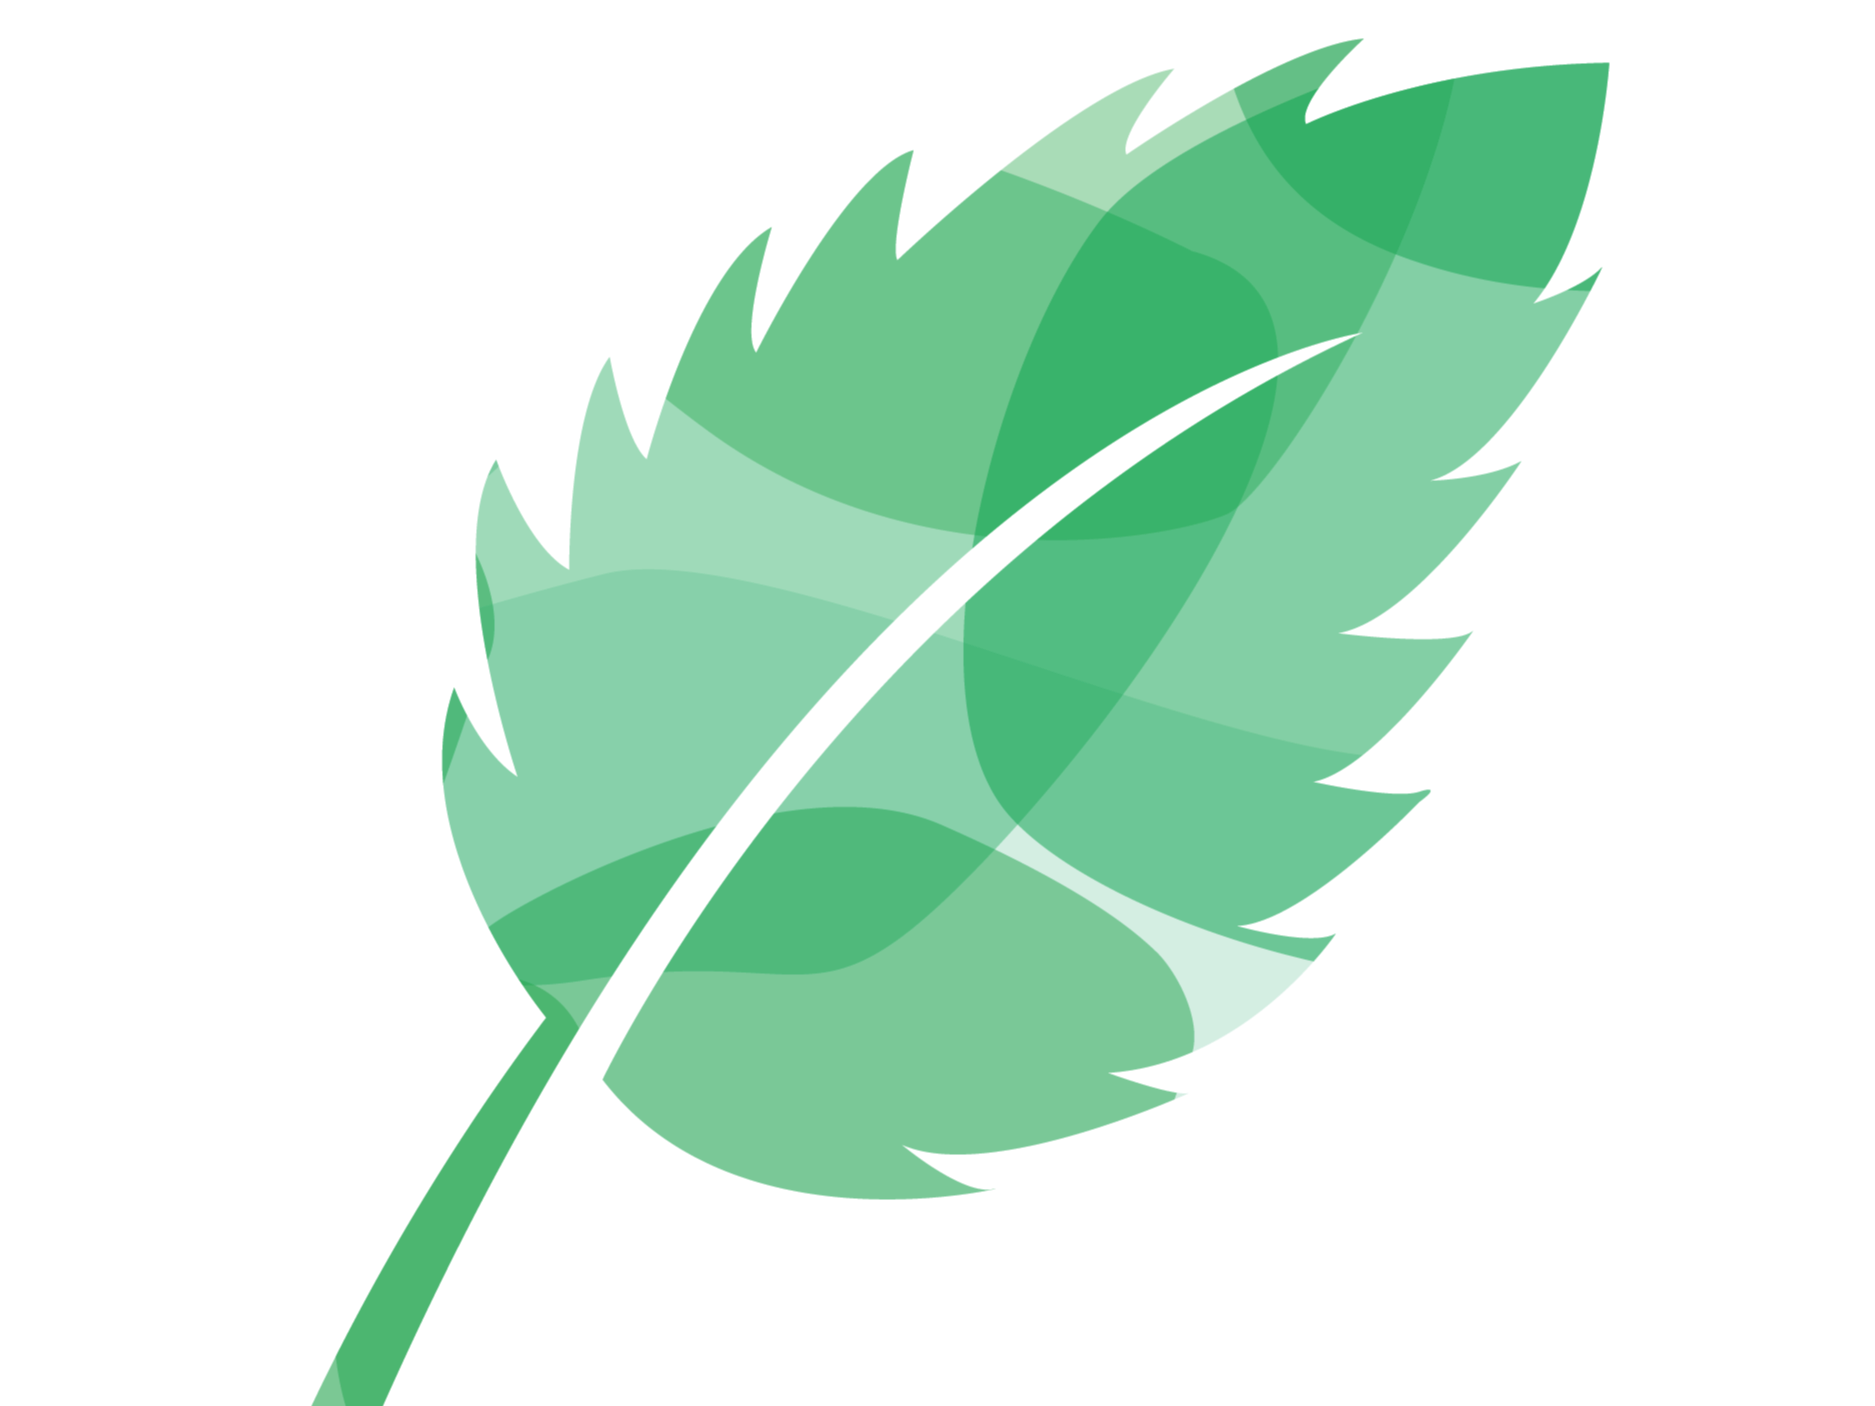 Illustration of a green leaf